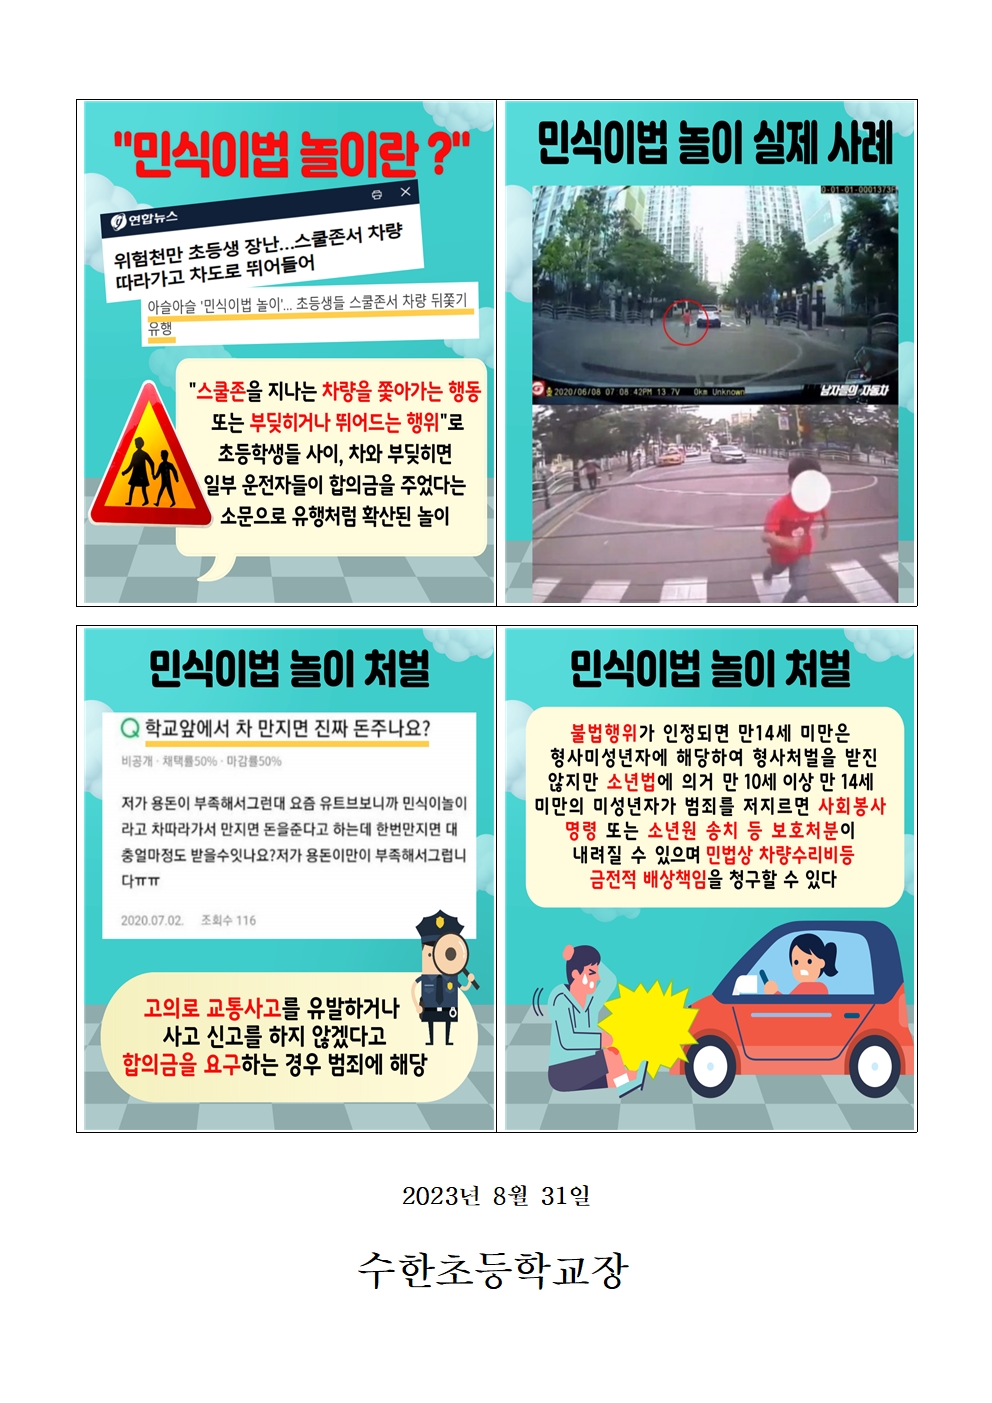 교통안전사고 예방교육 안내문(민식이법 놀이 금지)002